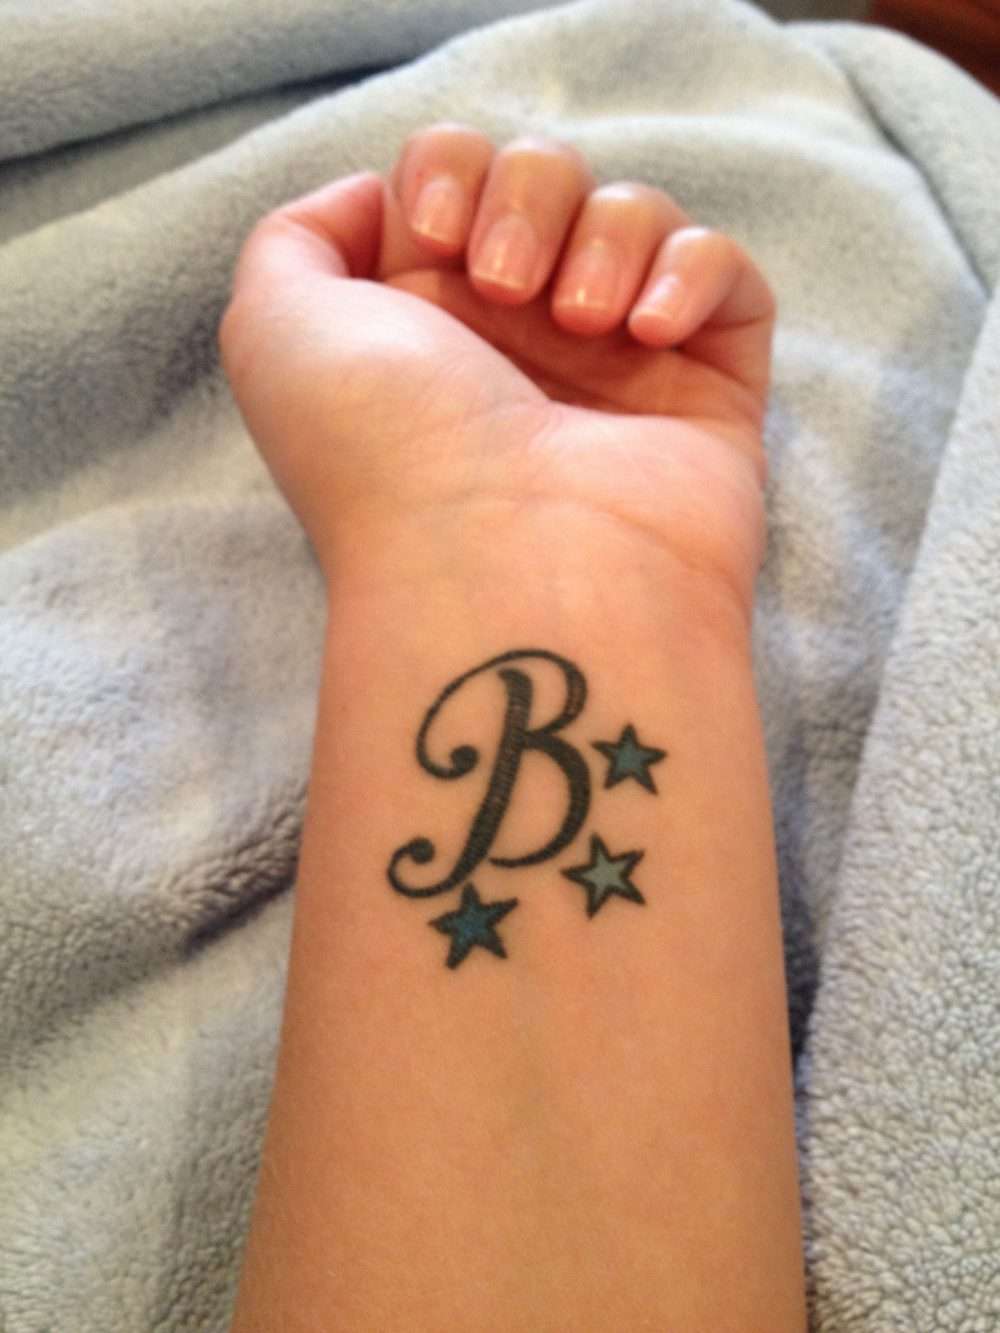 Tatuaje de letra "B" con estrellas